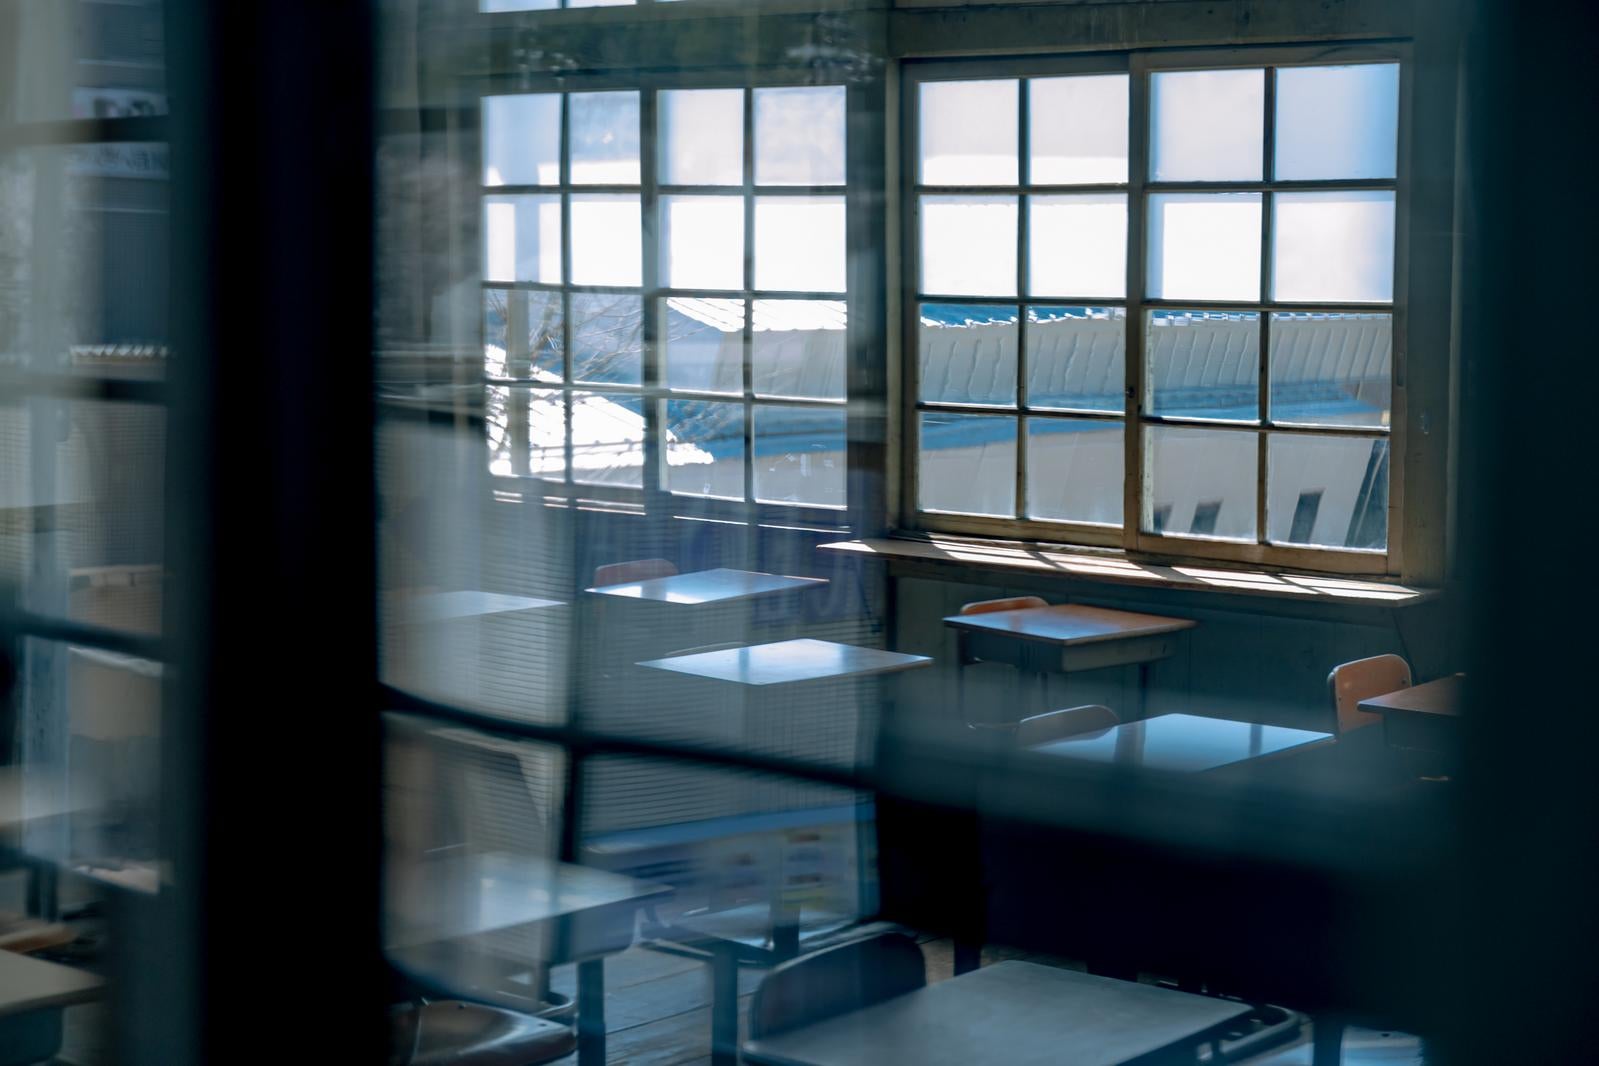 「窓ガラス越しの放課後の教室風景」の写真